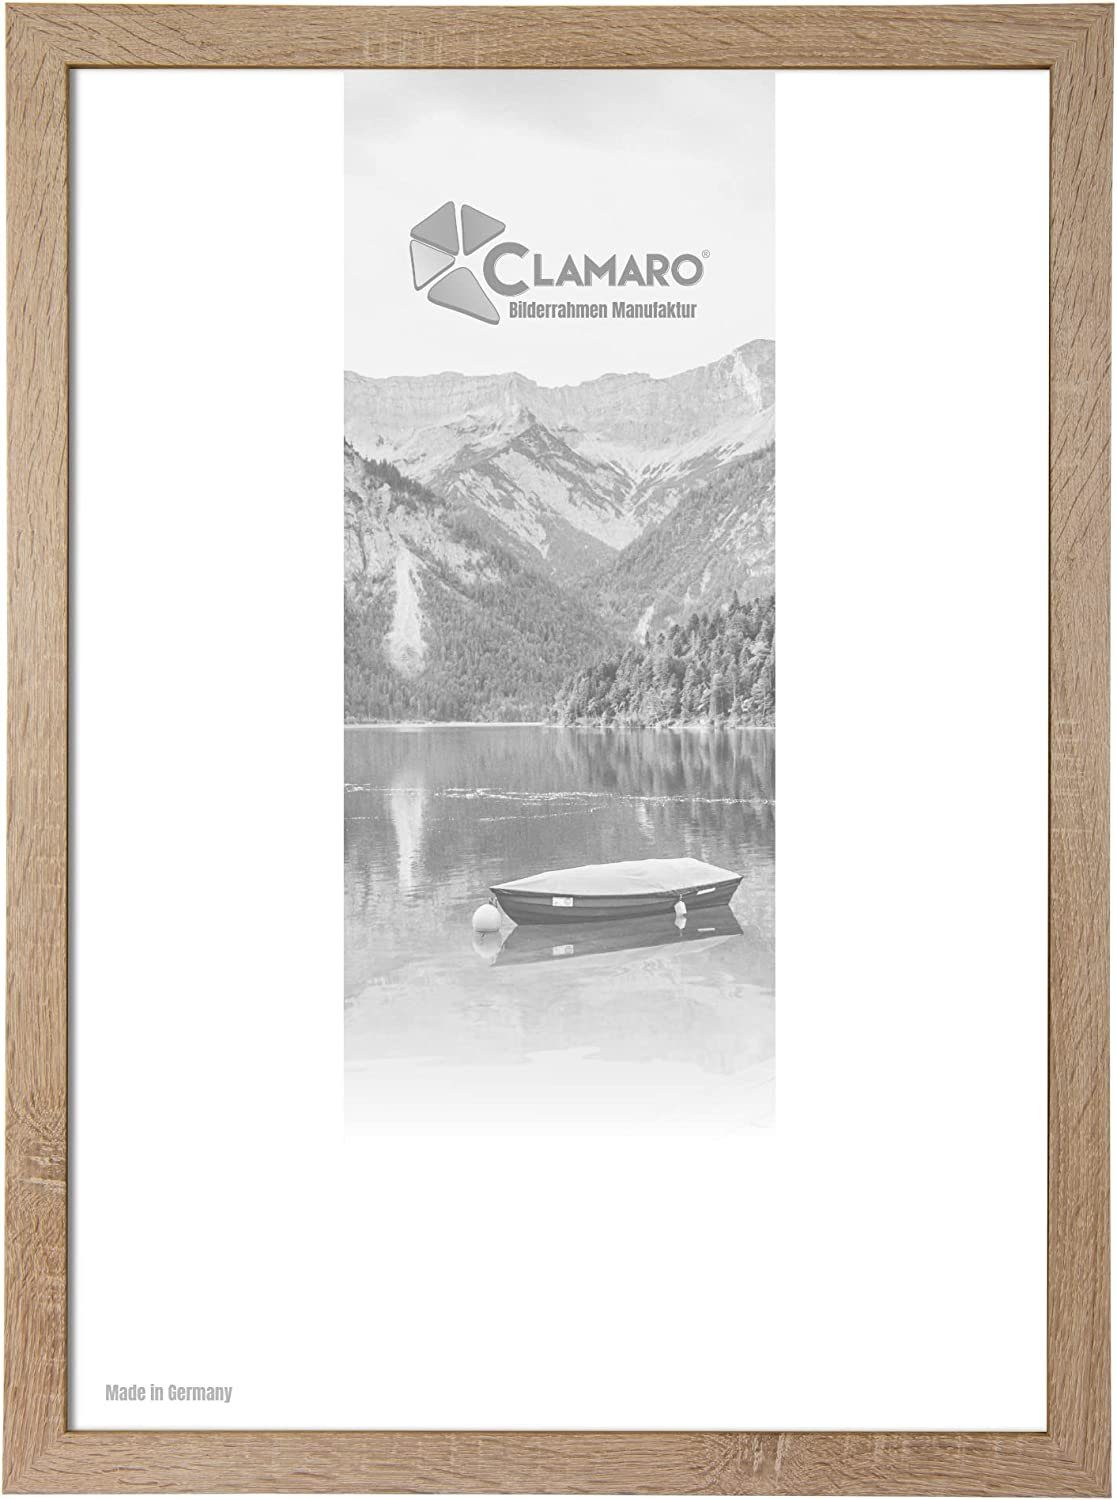 Clamaro Bilderrahmen Bilderrahmen Eiche Sonoma CLAMARO Collage nach Maß FSC® Holz Modern eckig M3016 21x28 in Eiche Sonoma